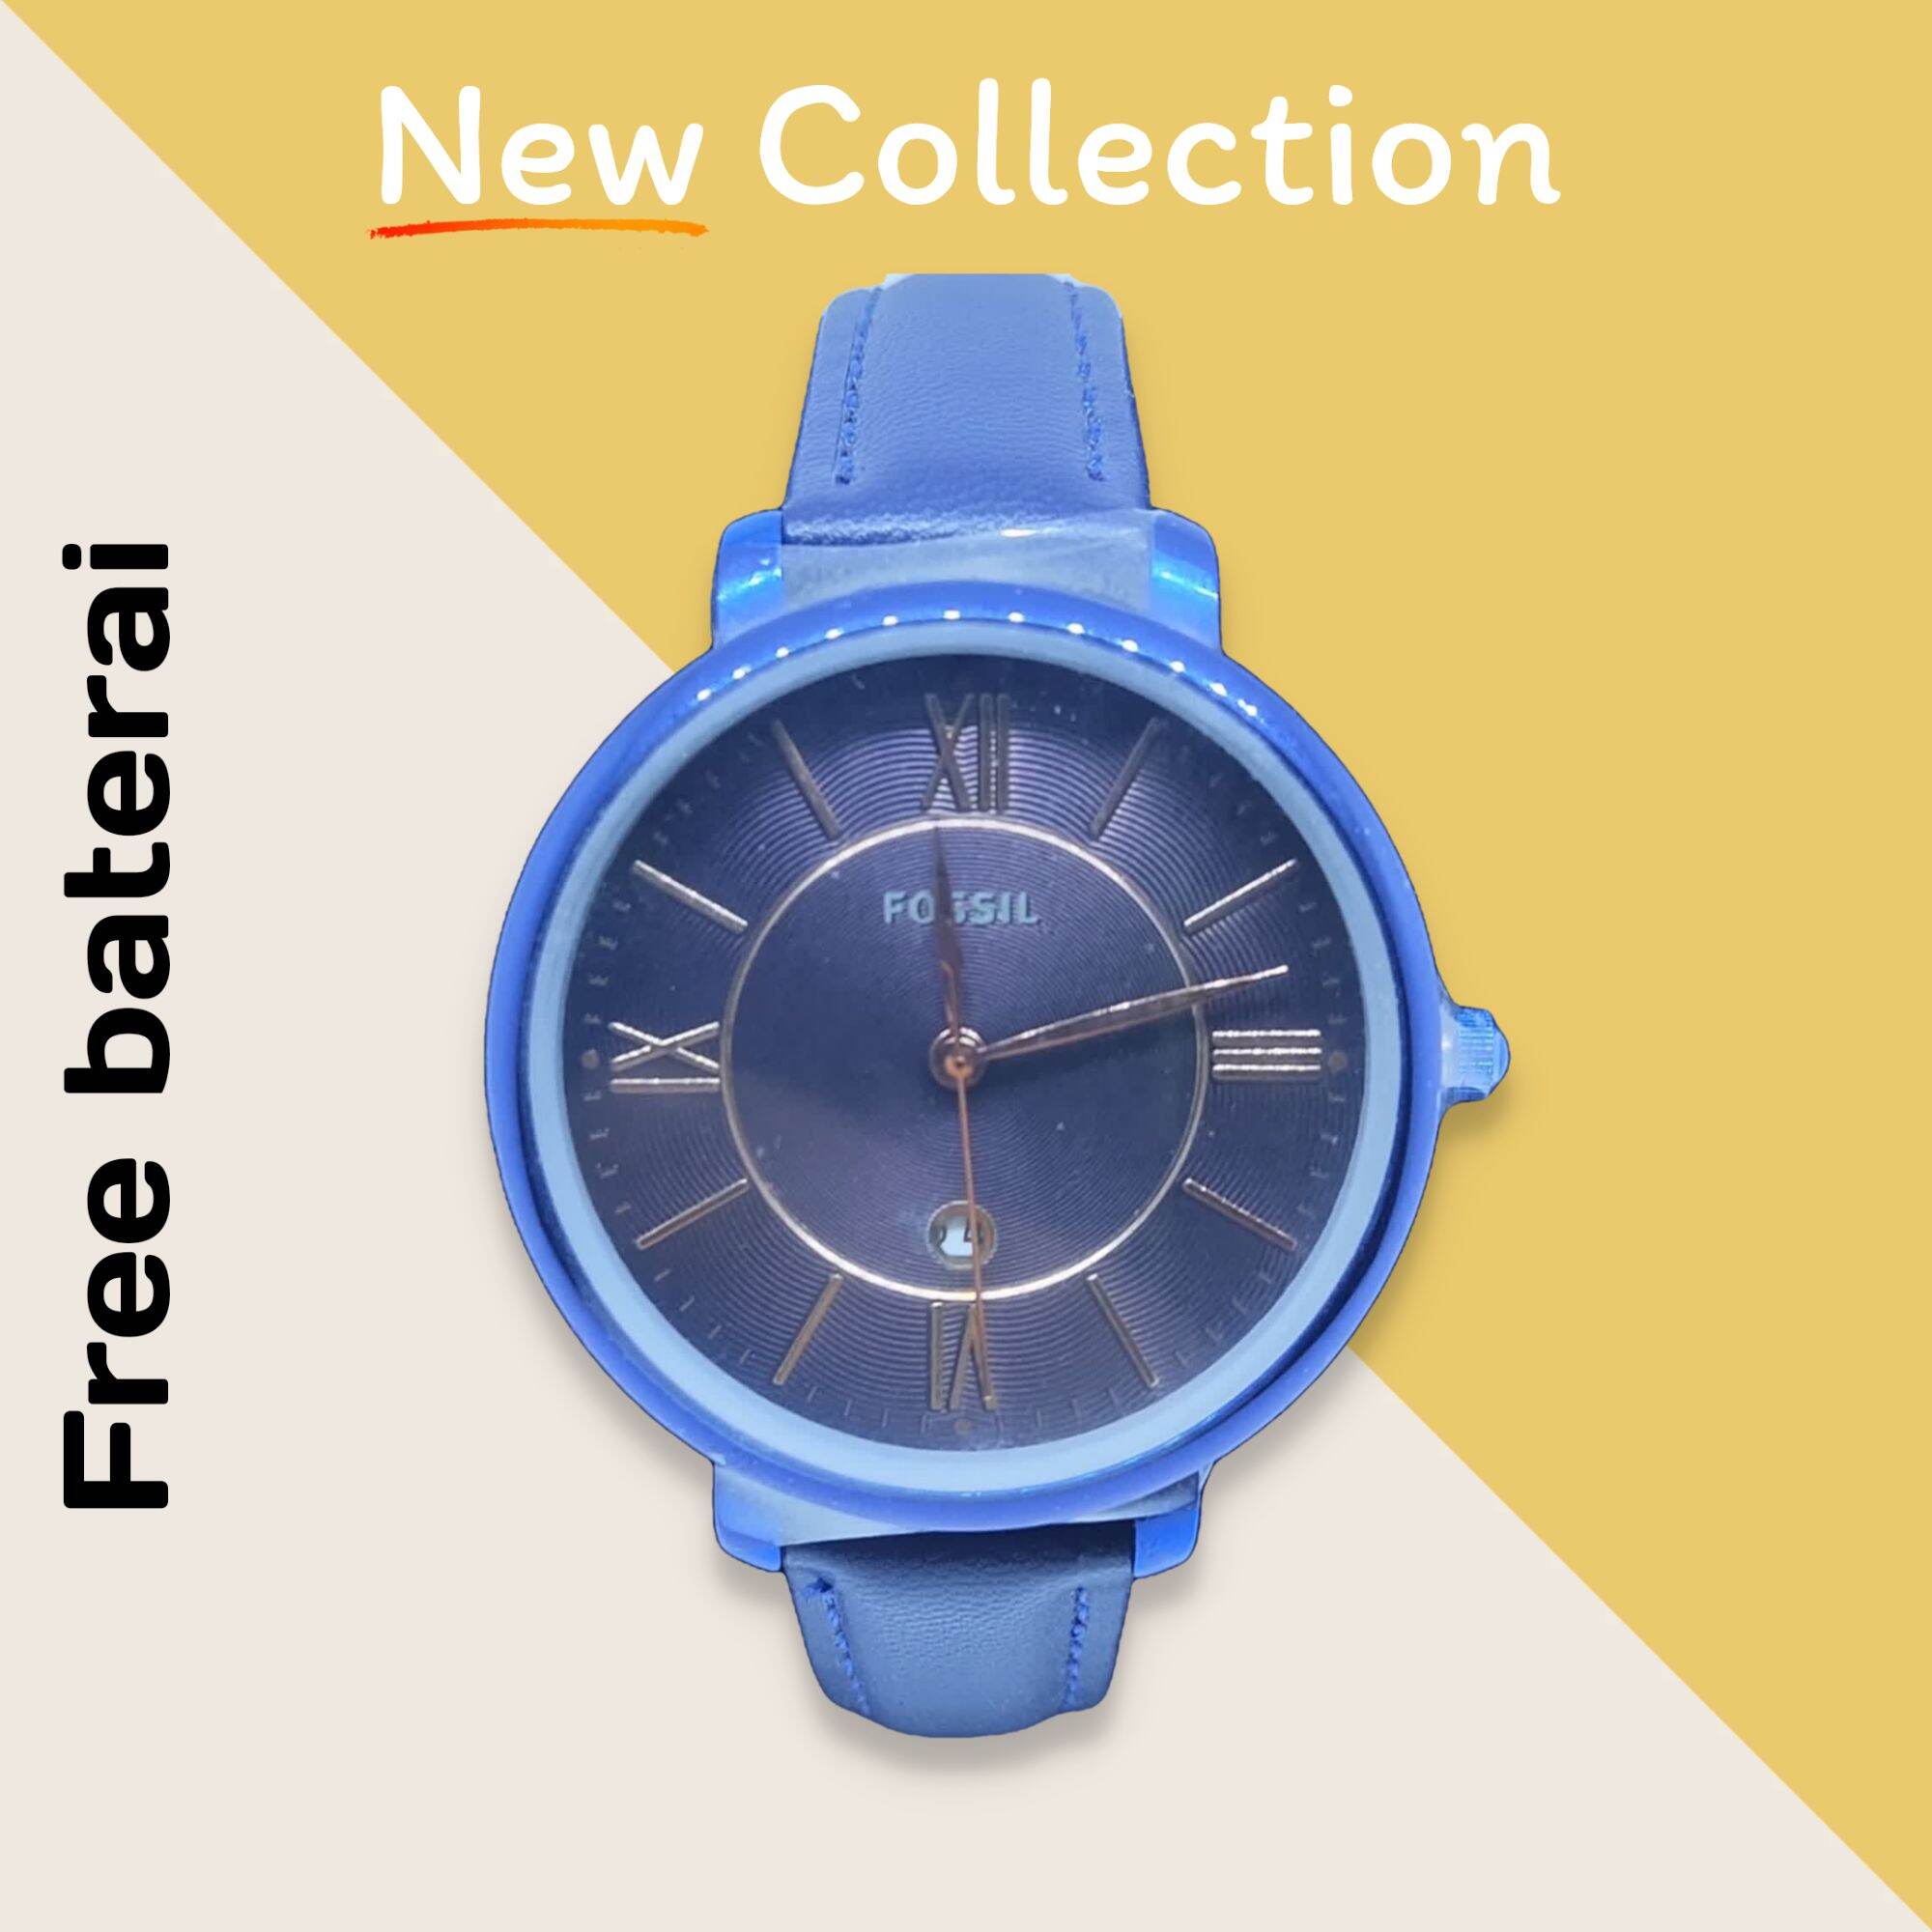 jam tangan wanita - F0$lL terbaru model kulit analog water resist